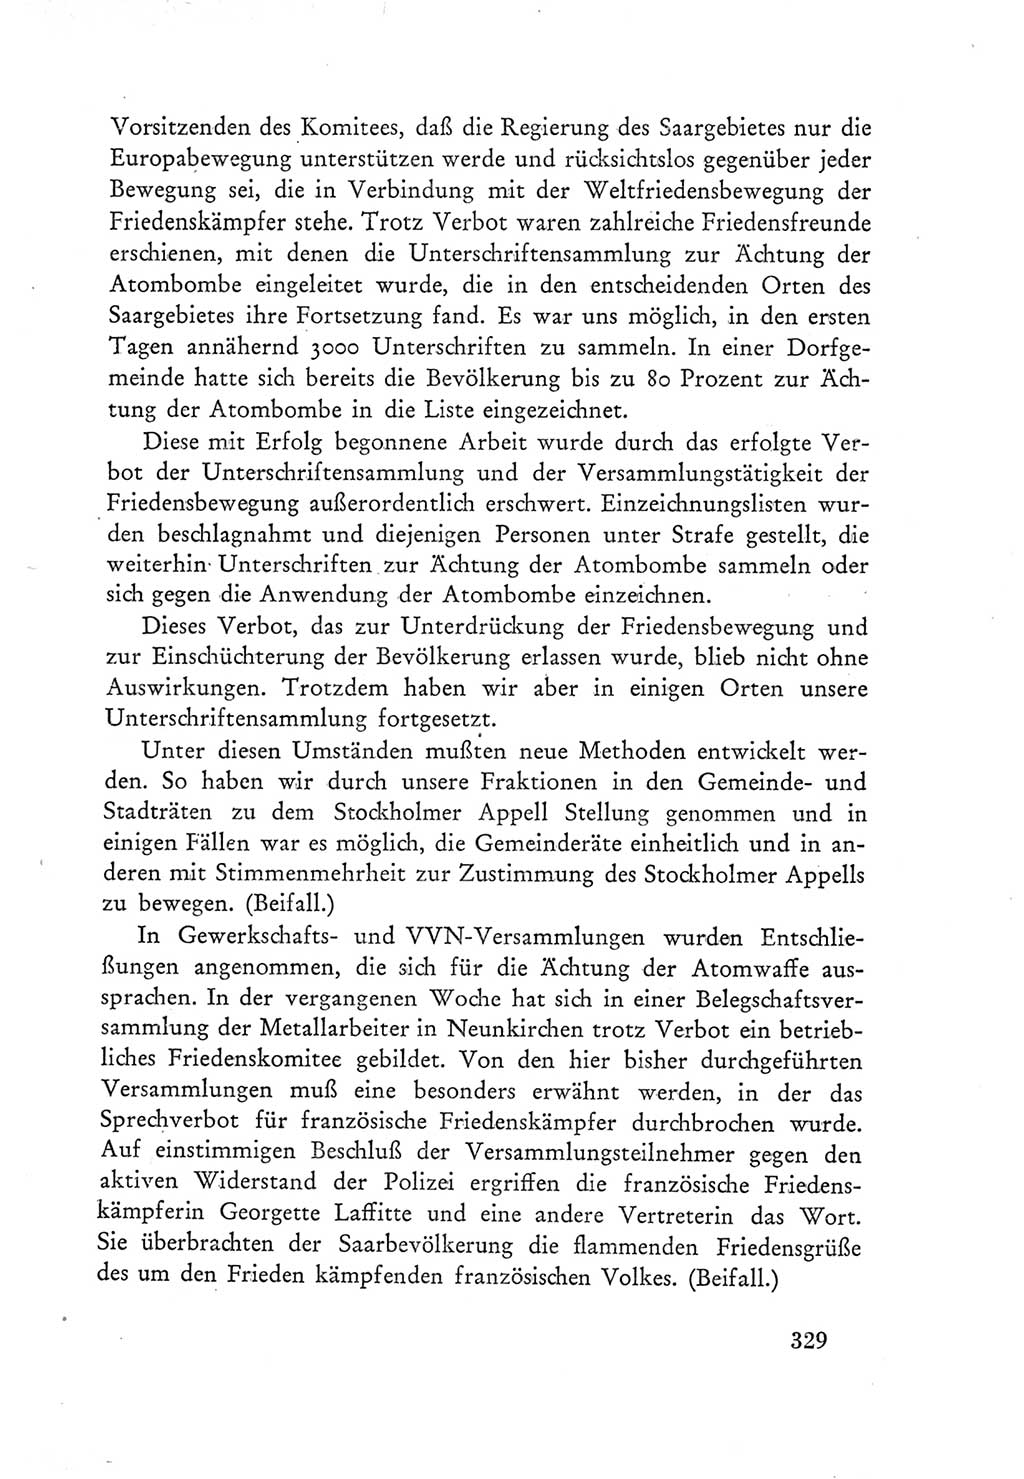 Protokoll der Verhandlungen des Ⅲ. Parteitages der Sozialistischen Einheitspartei Deutschlands (SED) [Deutsche Demokratische Republik (DDR)] 1950, Band 1, Seite 329 (Prot. Verh. Ⅲ. PT SED DDR 1950, Bd. 1, S. 329)